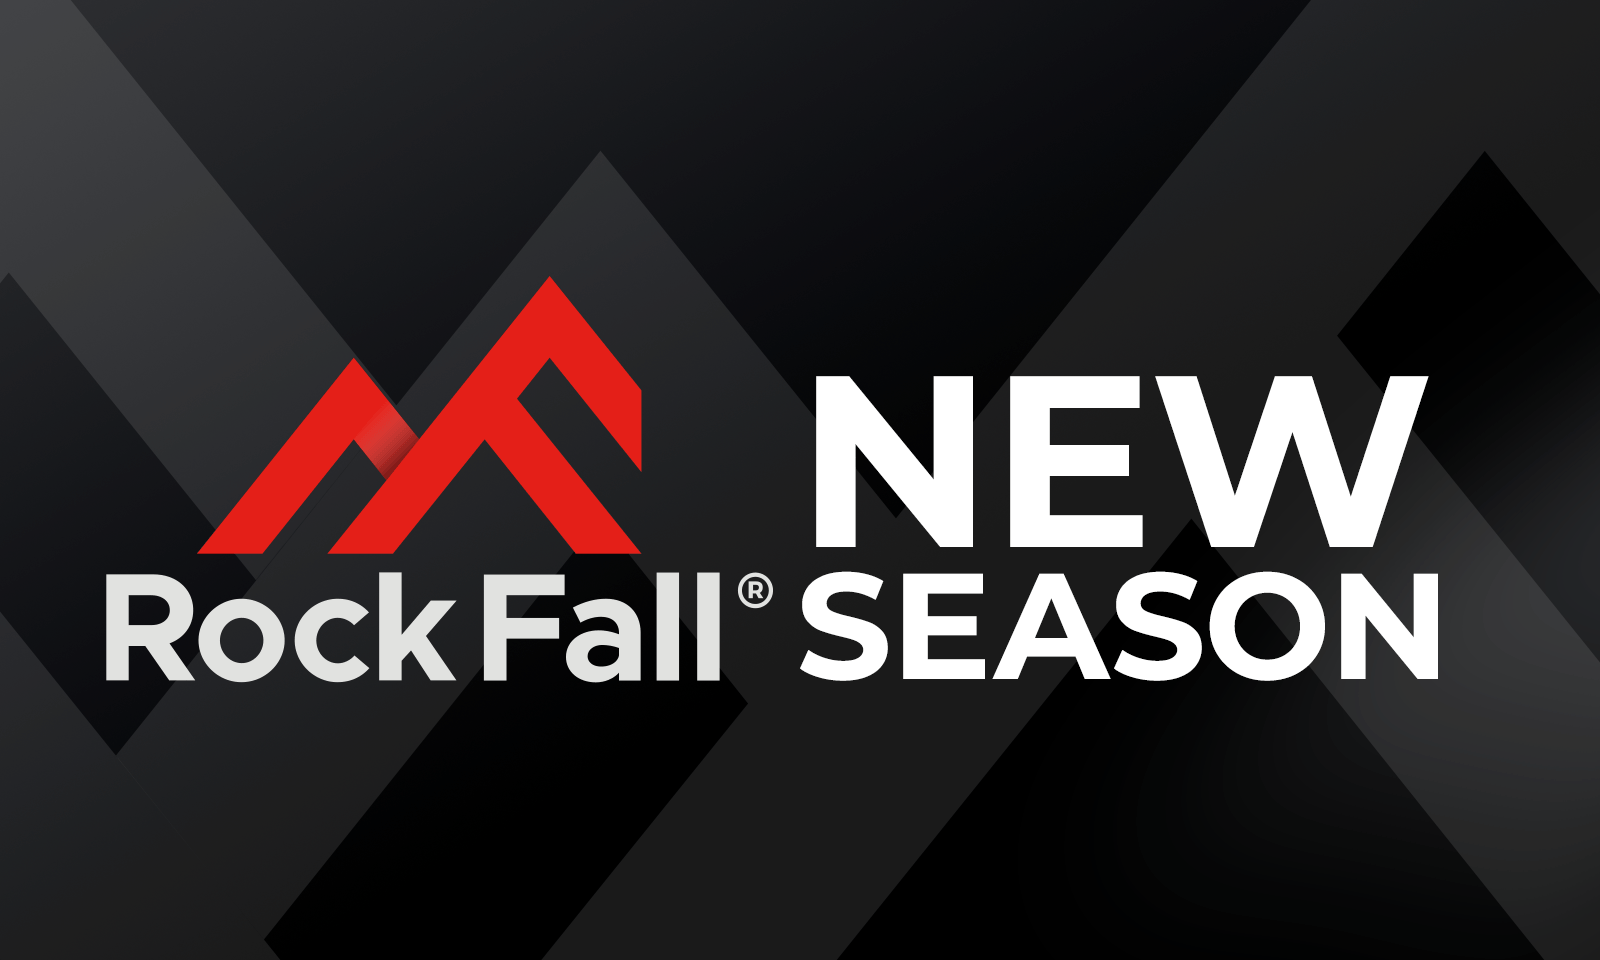 New Season Rock Fall